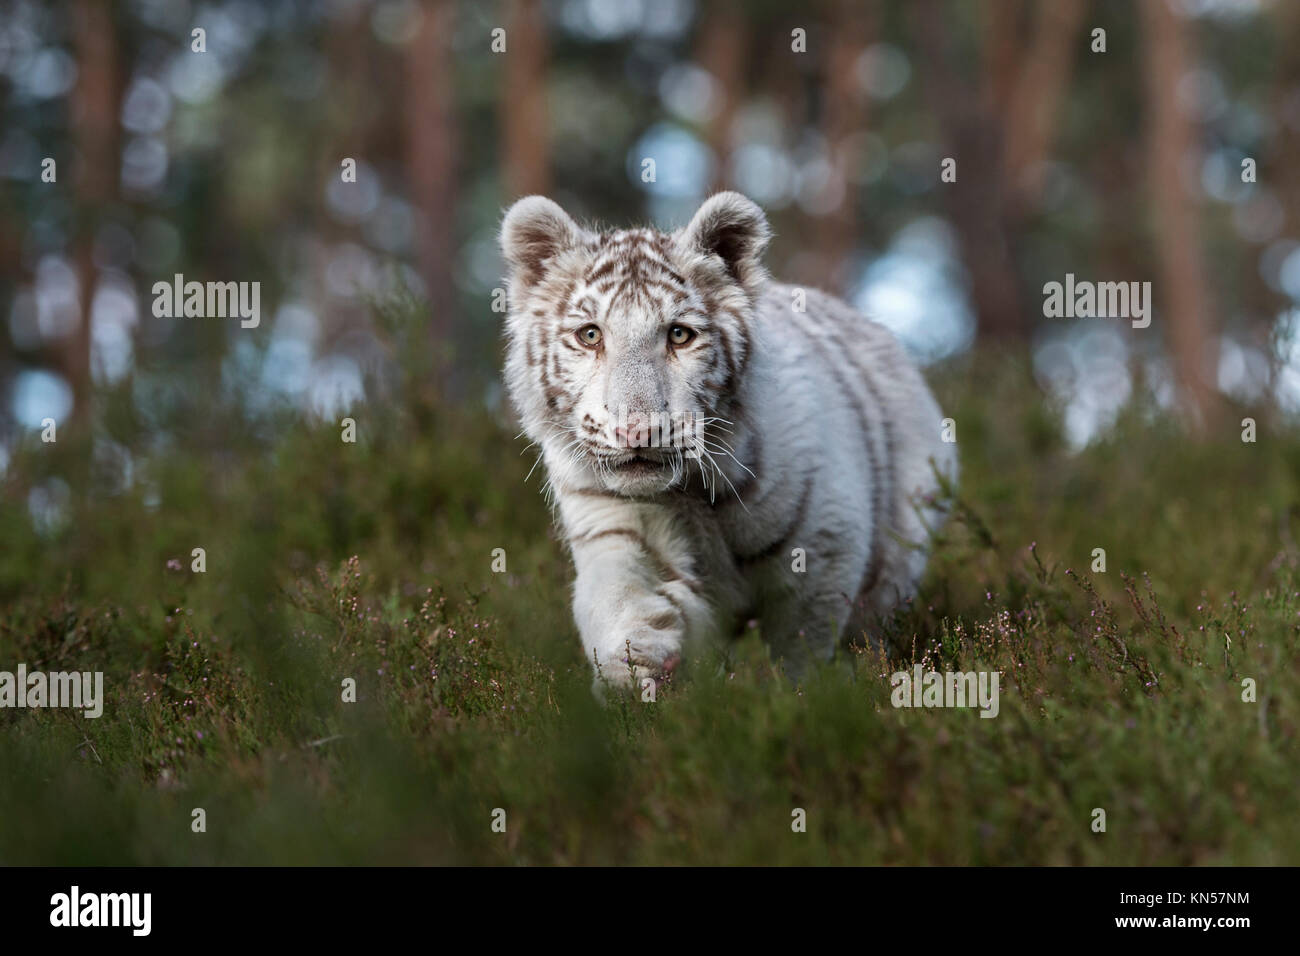 Royal Bengal Tiger (Panthera tigris), weißes Tier, heimlich durch das Unterholz der natürlichen Wälder schleichen, frontal geschossen, geringe Sicht. Stockfoto